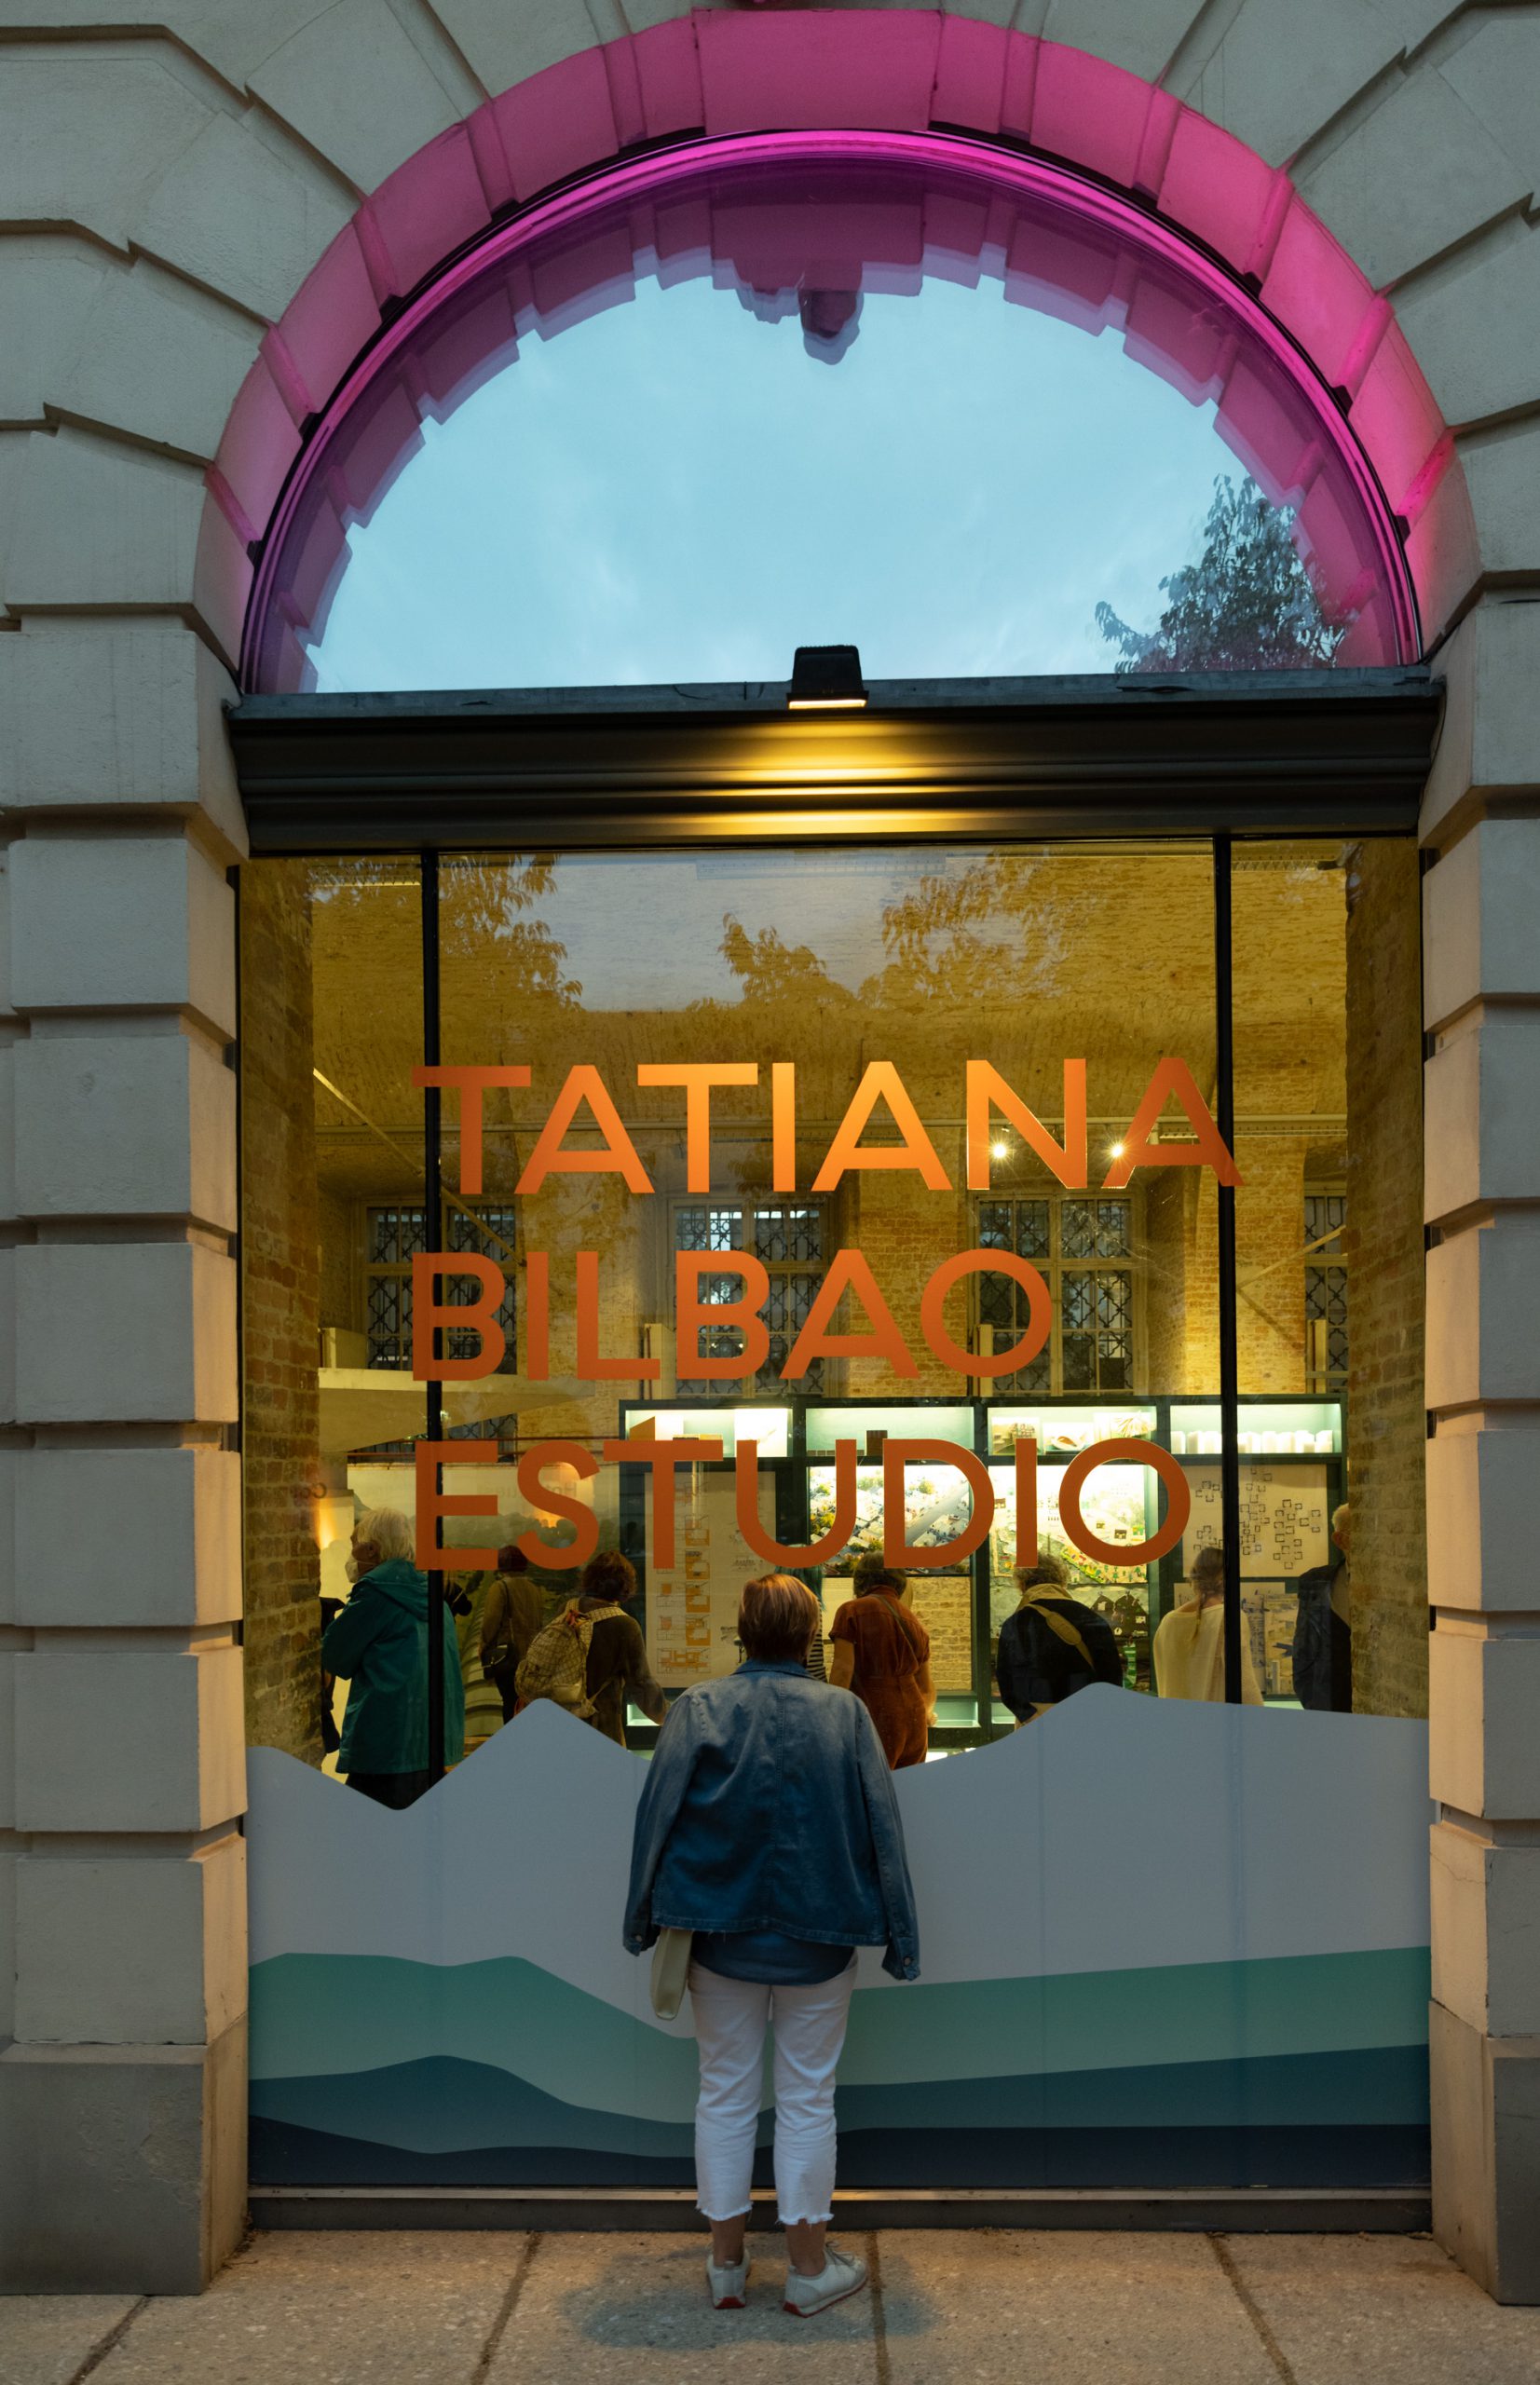 Fenster mit Schriftzug "Tatiana Bilbao Estudio", ein Mensch schaut hinein